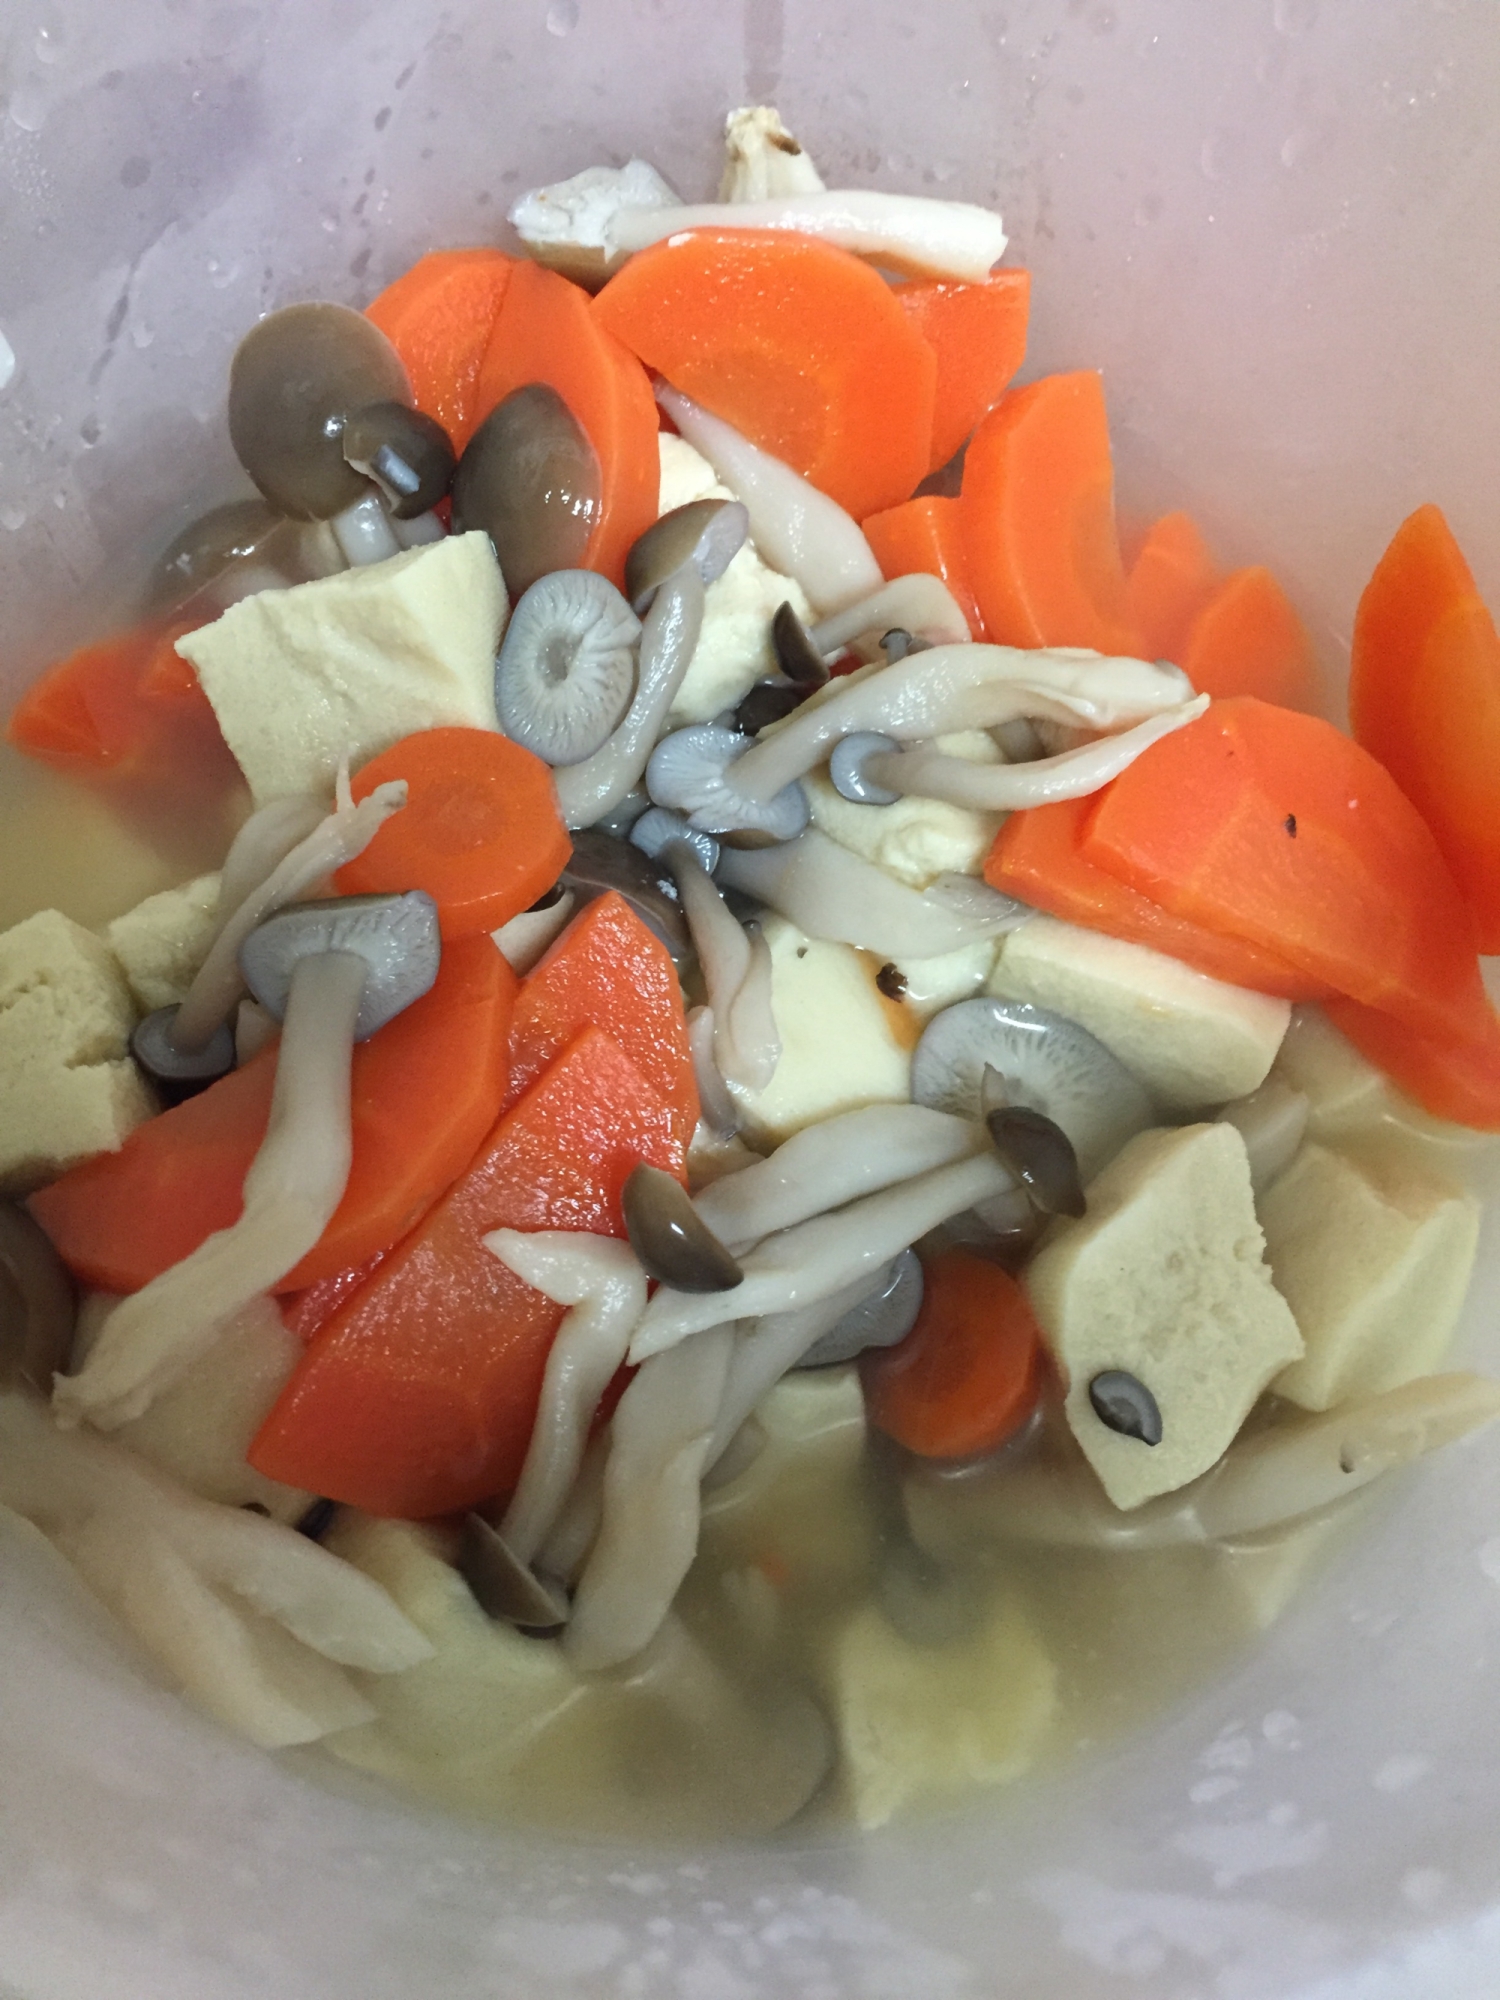 高野豆腐と野菜の煮物